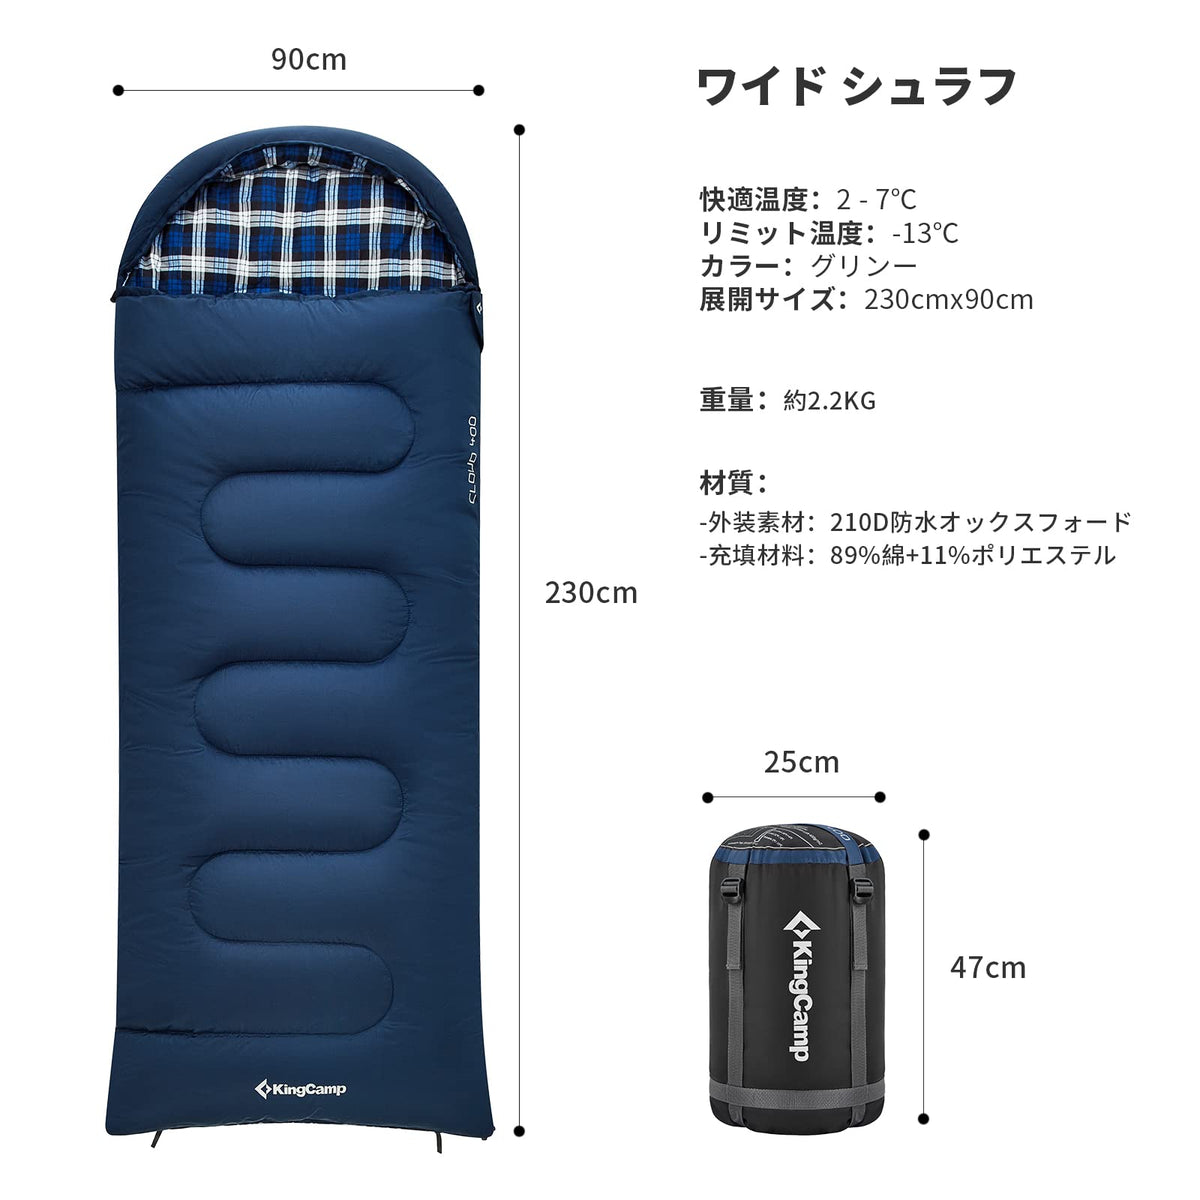 【色: 2.2kg ホワイト 右開き】KingCamp 寝袋 シュラフ 封筒型